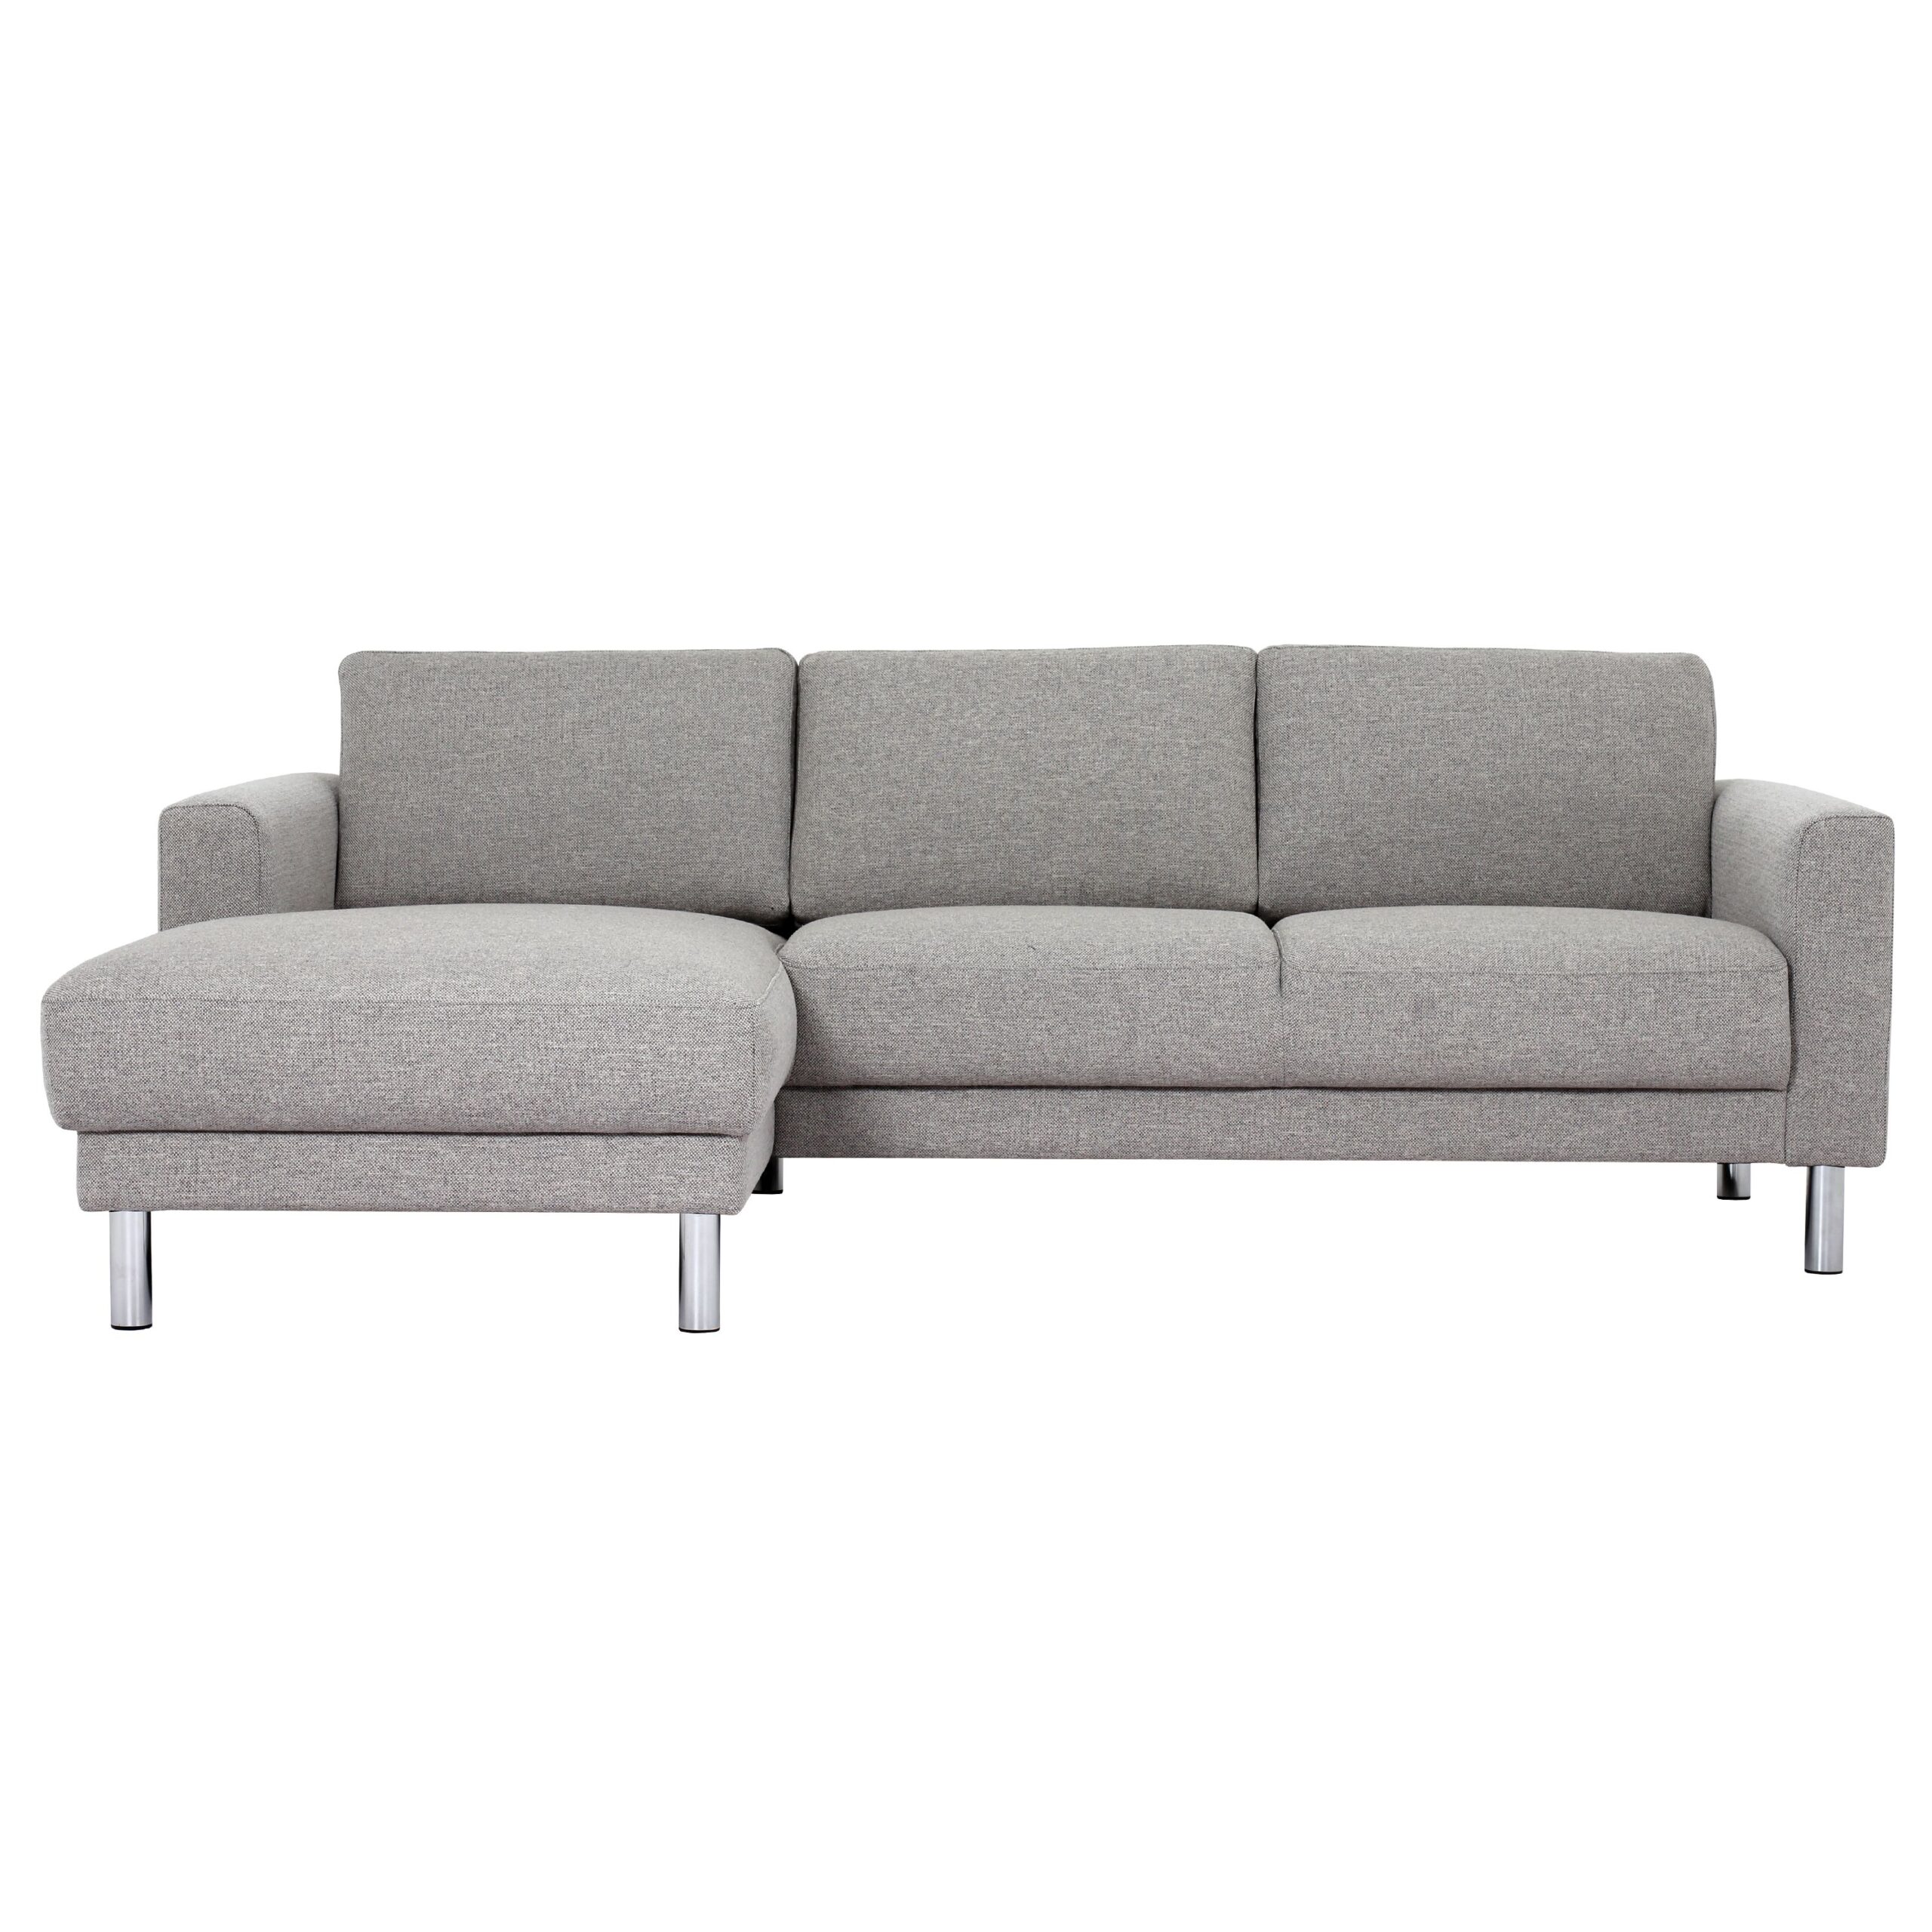 Mex Chaiselongue Sofa (Lh)